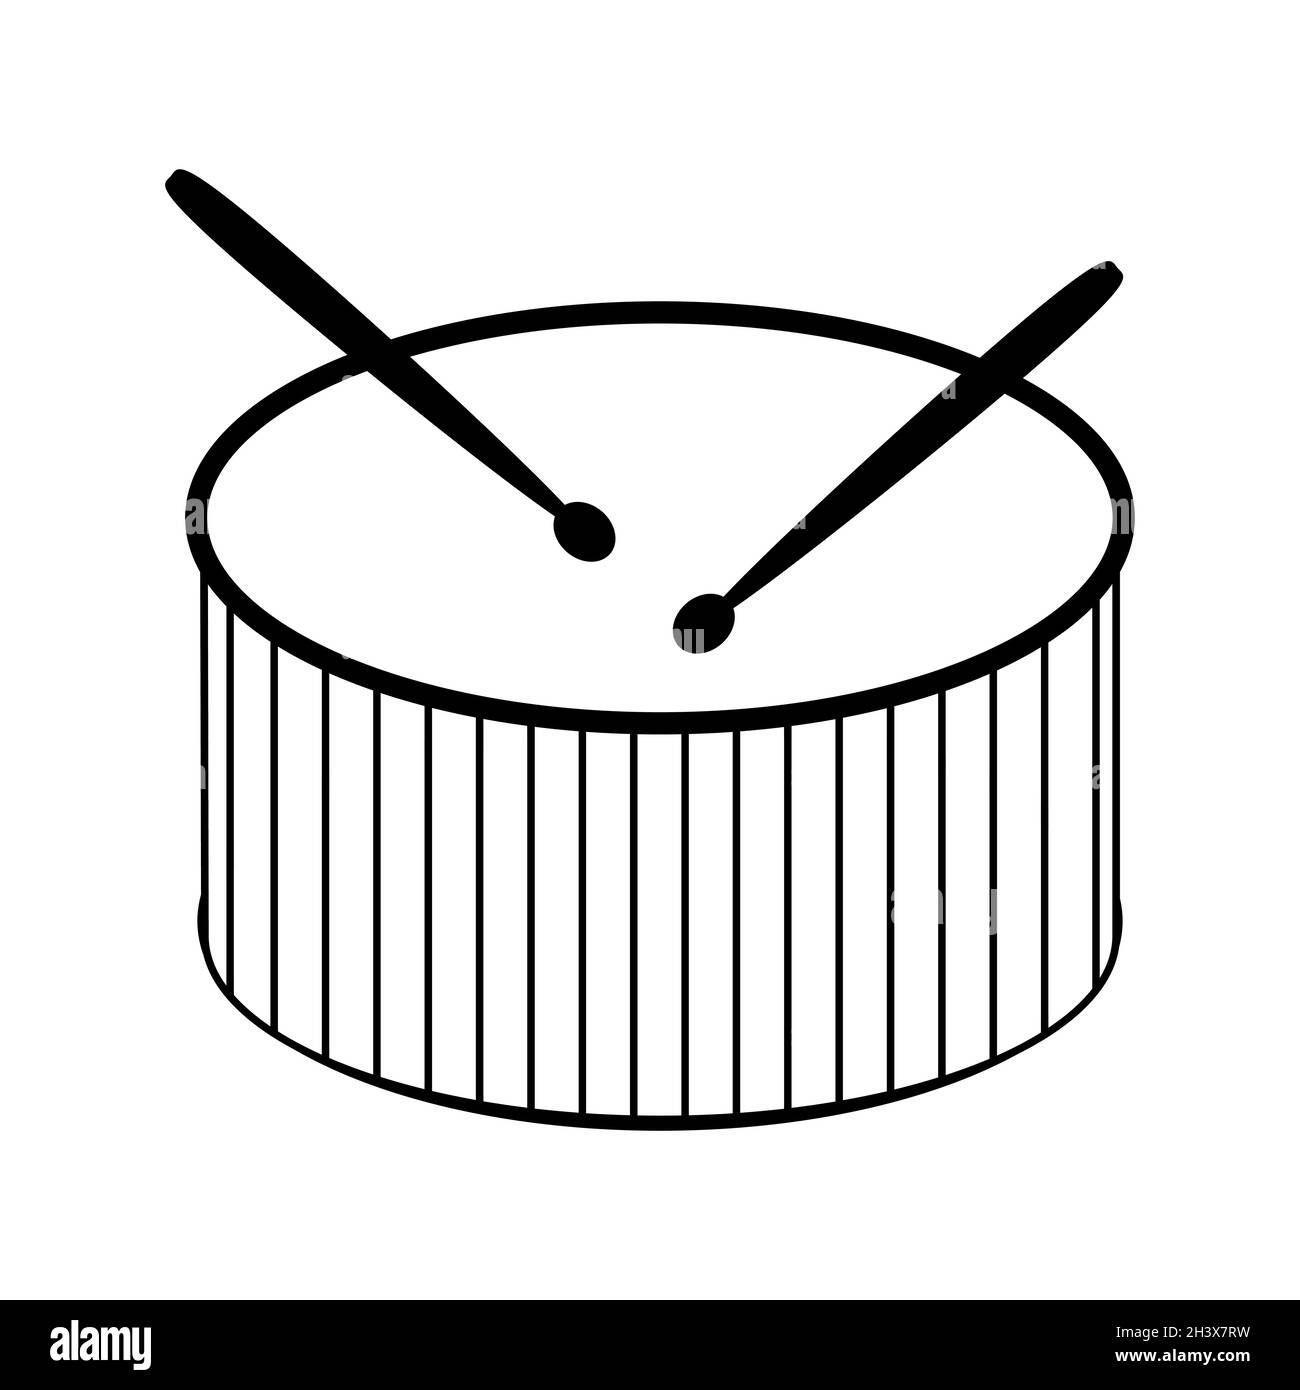 Icona drum and drumsticks (tamburo e tamburi). Strumento musicale a percussione simbolo di linea nera isolato su sfondo bianco. Illustrazione vettoriale. Illustrazione Vettoriale